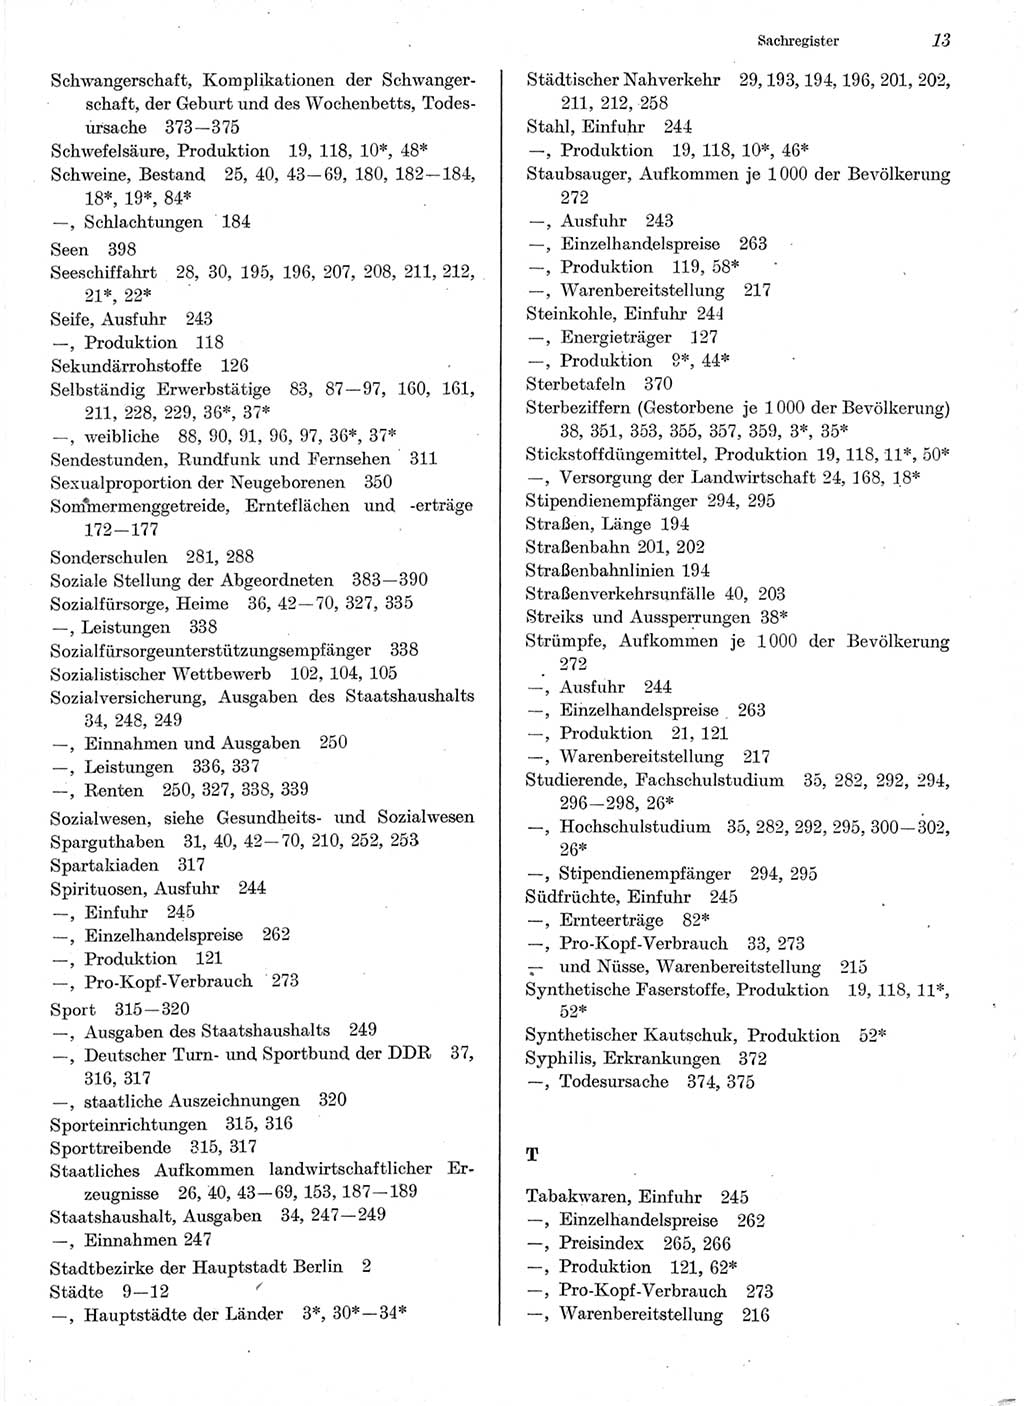 Statistisches Jahrbuch der Deutschen Demokratischen Republik (DDR) 1978, Seite 13 (Stat. Jb. DDR 1978, S. 13)